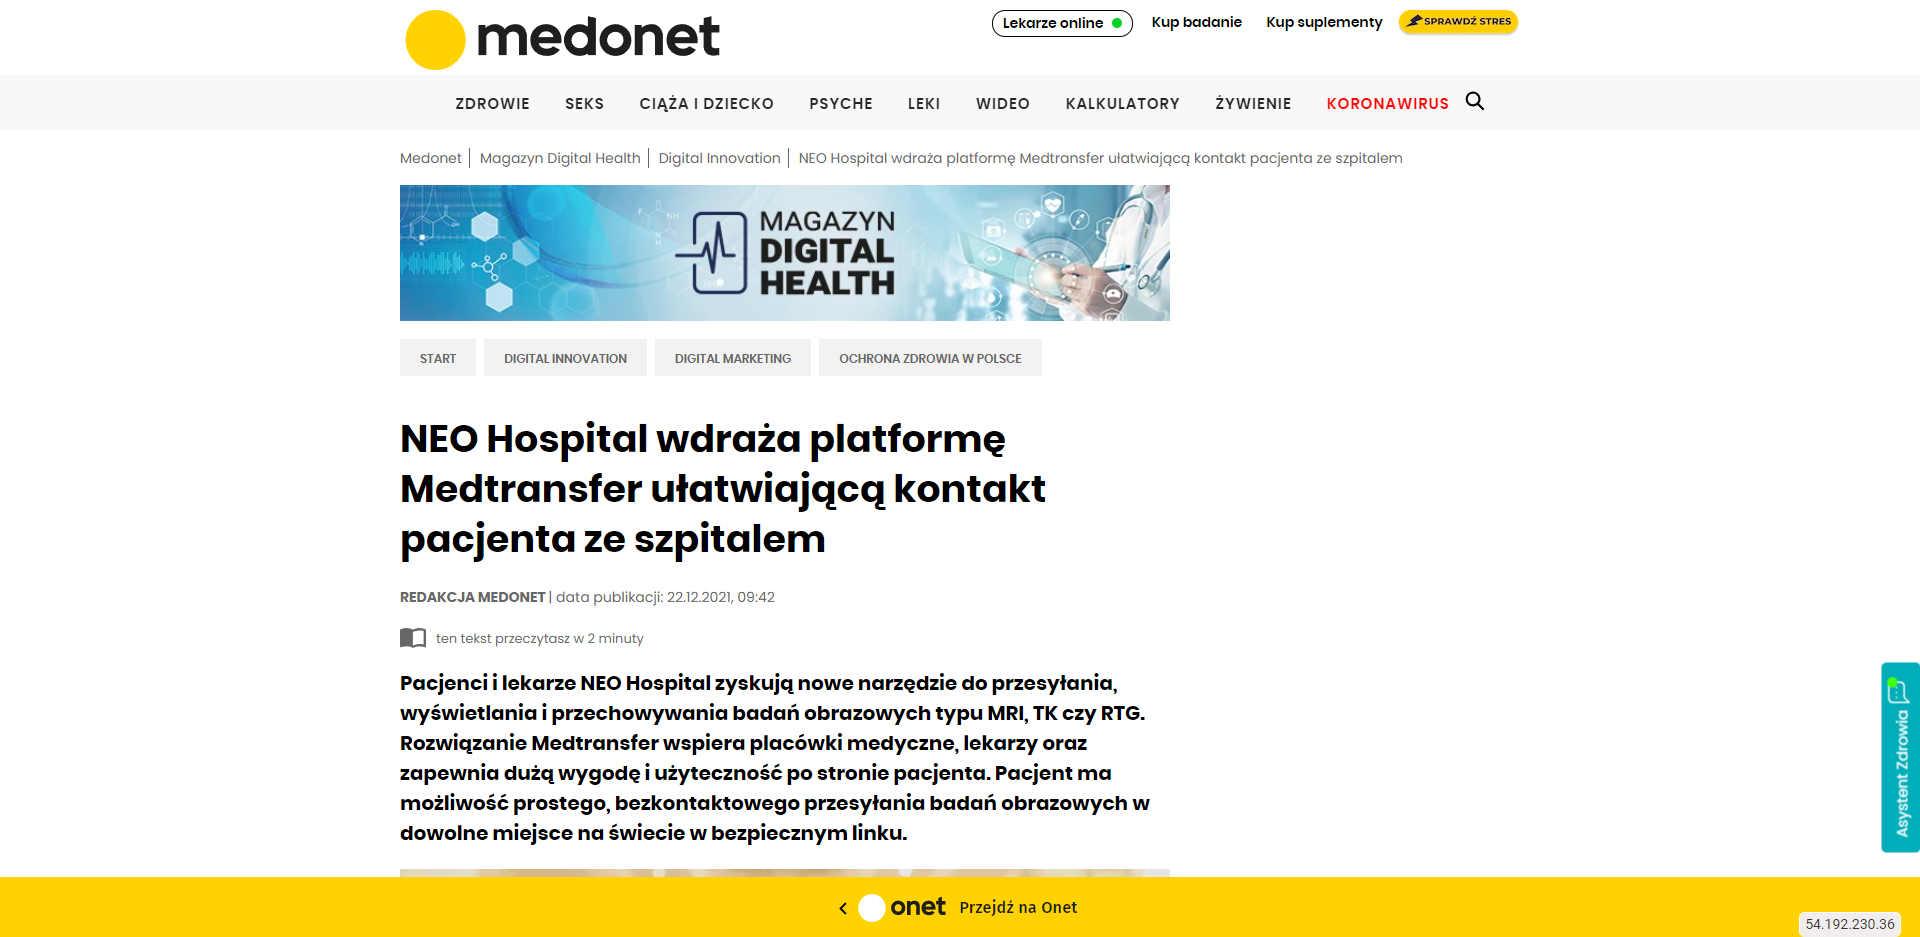 neo hospital wdraza platforme medtransfer ulatwiajaca kontakt pacjenta ze szpitalem